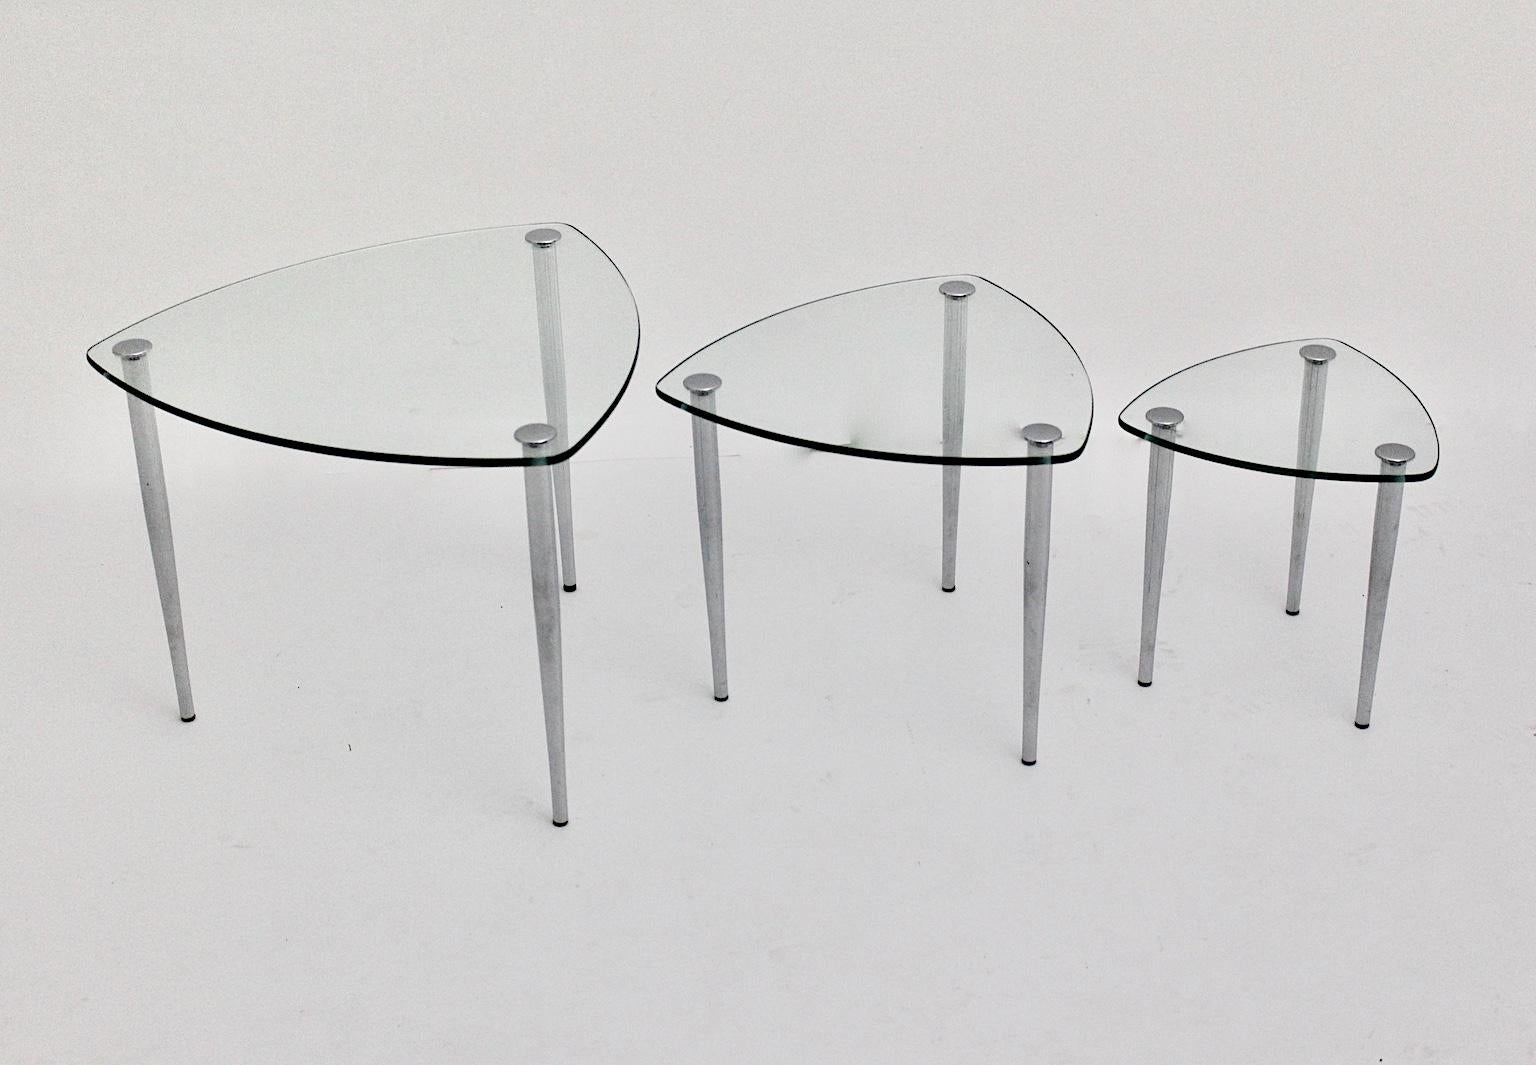 Mitte des Jahrhunderts Modern  drei Vintage-Nesting-Tische mit drei verchromten Füßen, die mit einer klaren Glasplatte verbunden sind. Die Füße sind auch leicht verschraubbar.
Auch die Tabellen zeigen drei Größen und eine Dreiecksform.
Entworfen und